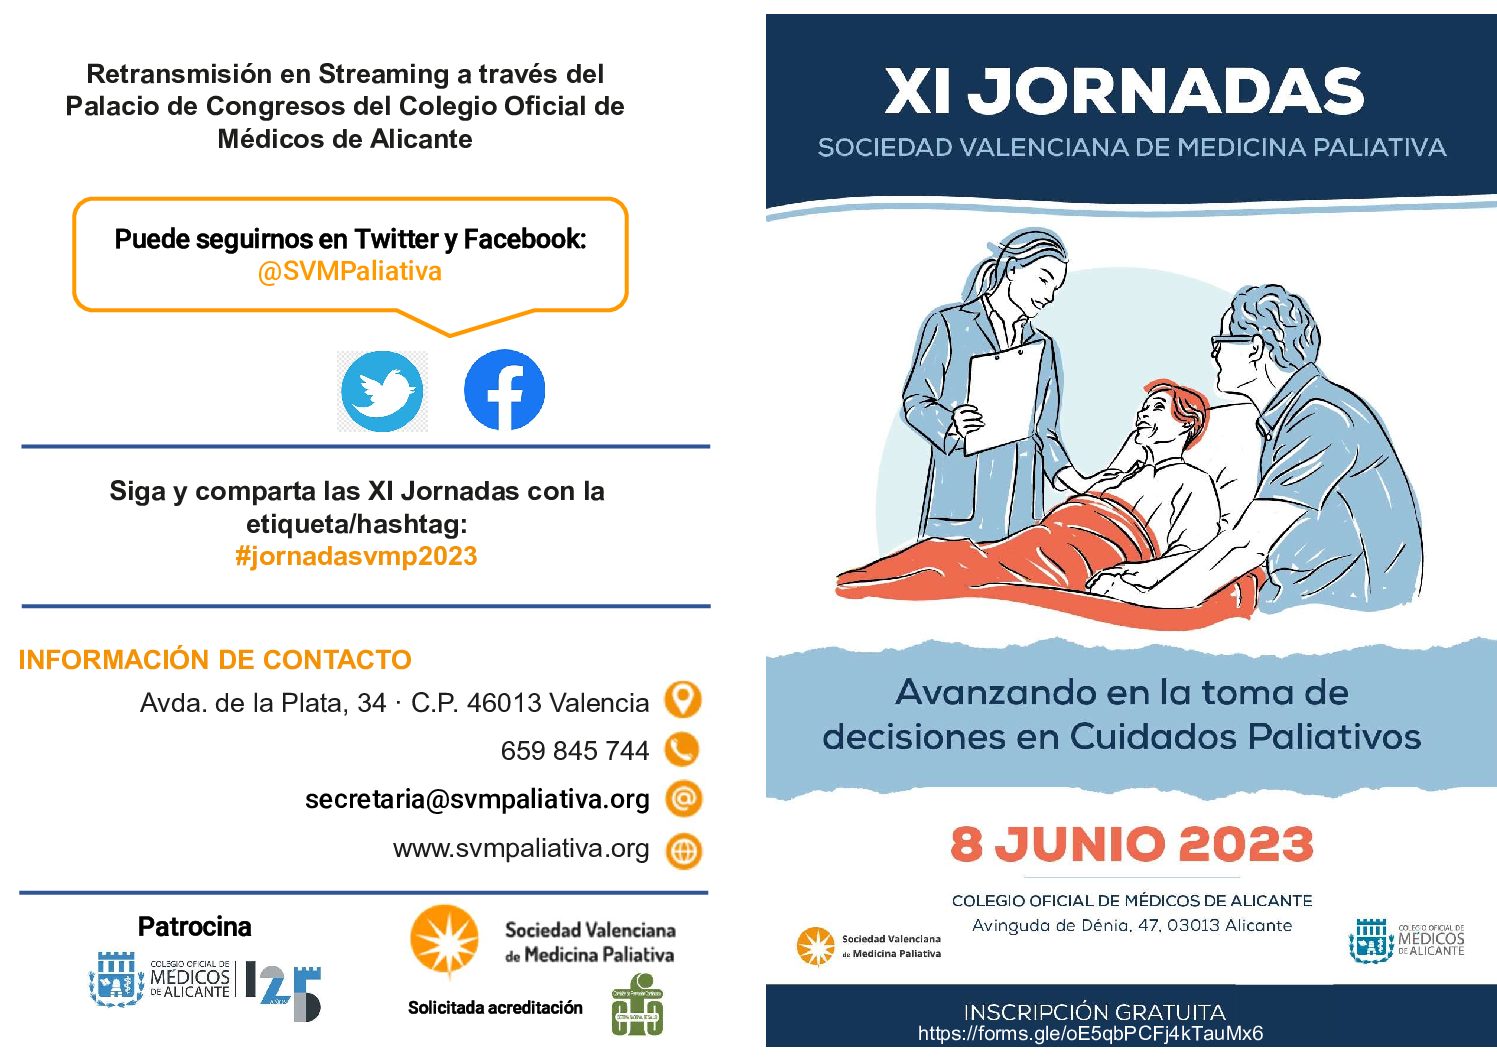 XI Jornadas Sociedad Valenciana de Medicina Paliativa.  Avanzando en la toma de decisiones en Cuidados Paliativos.